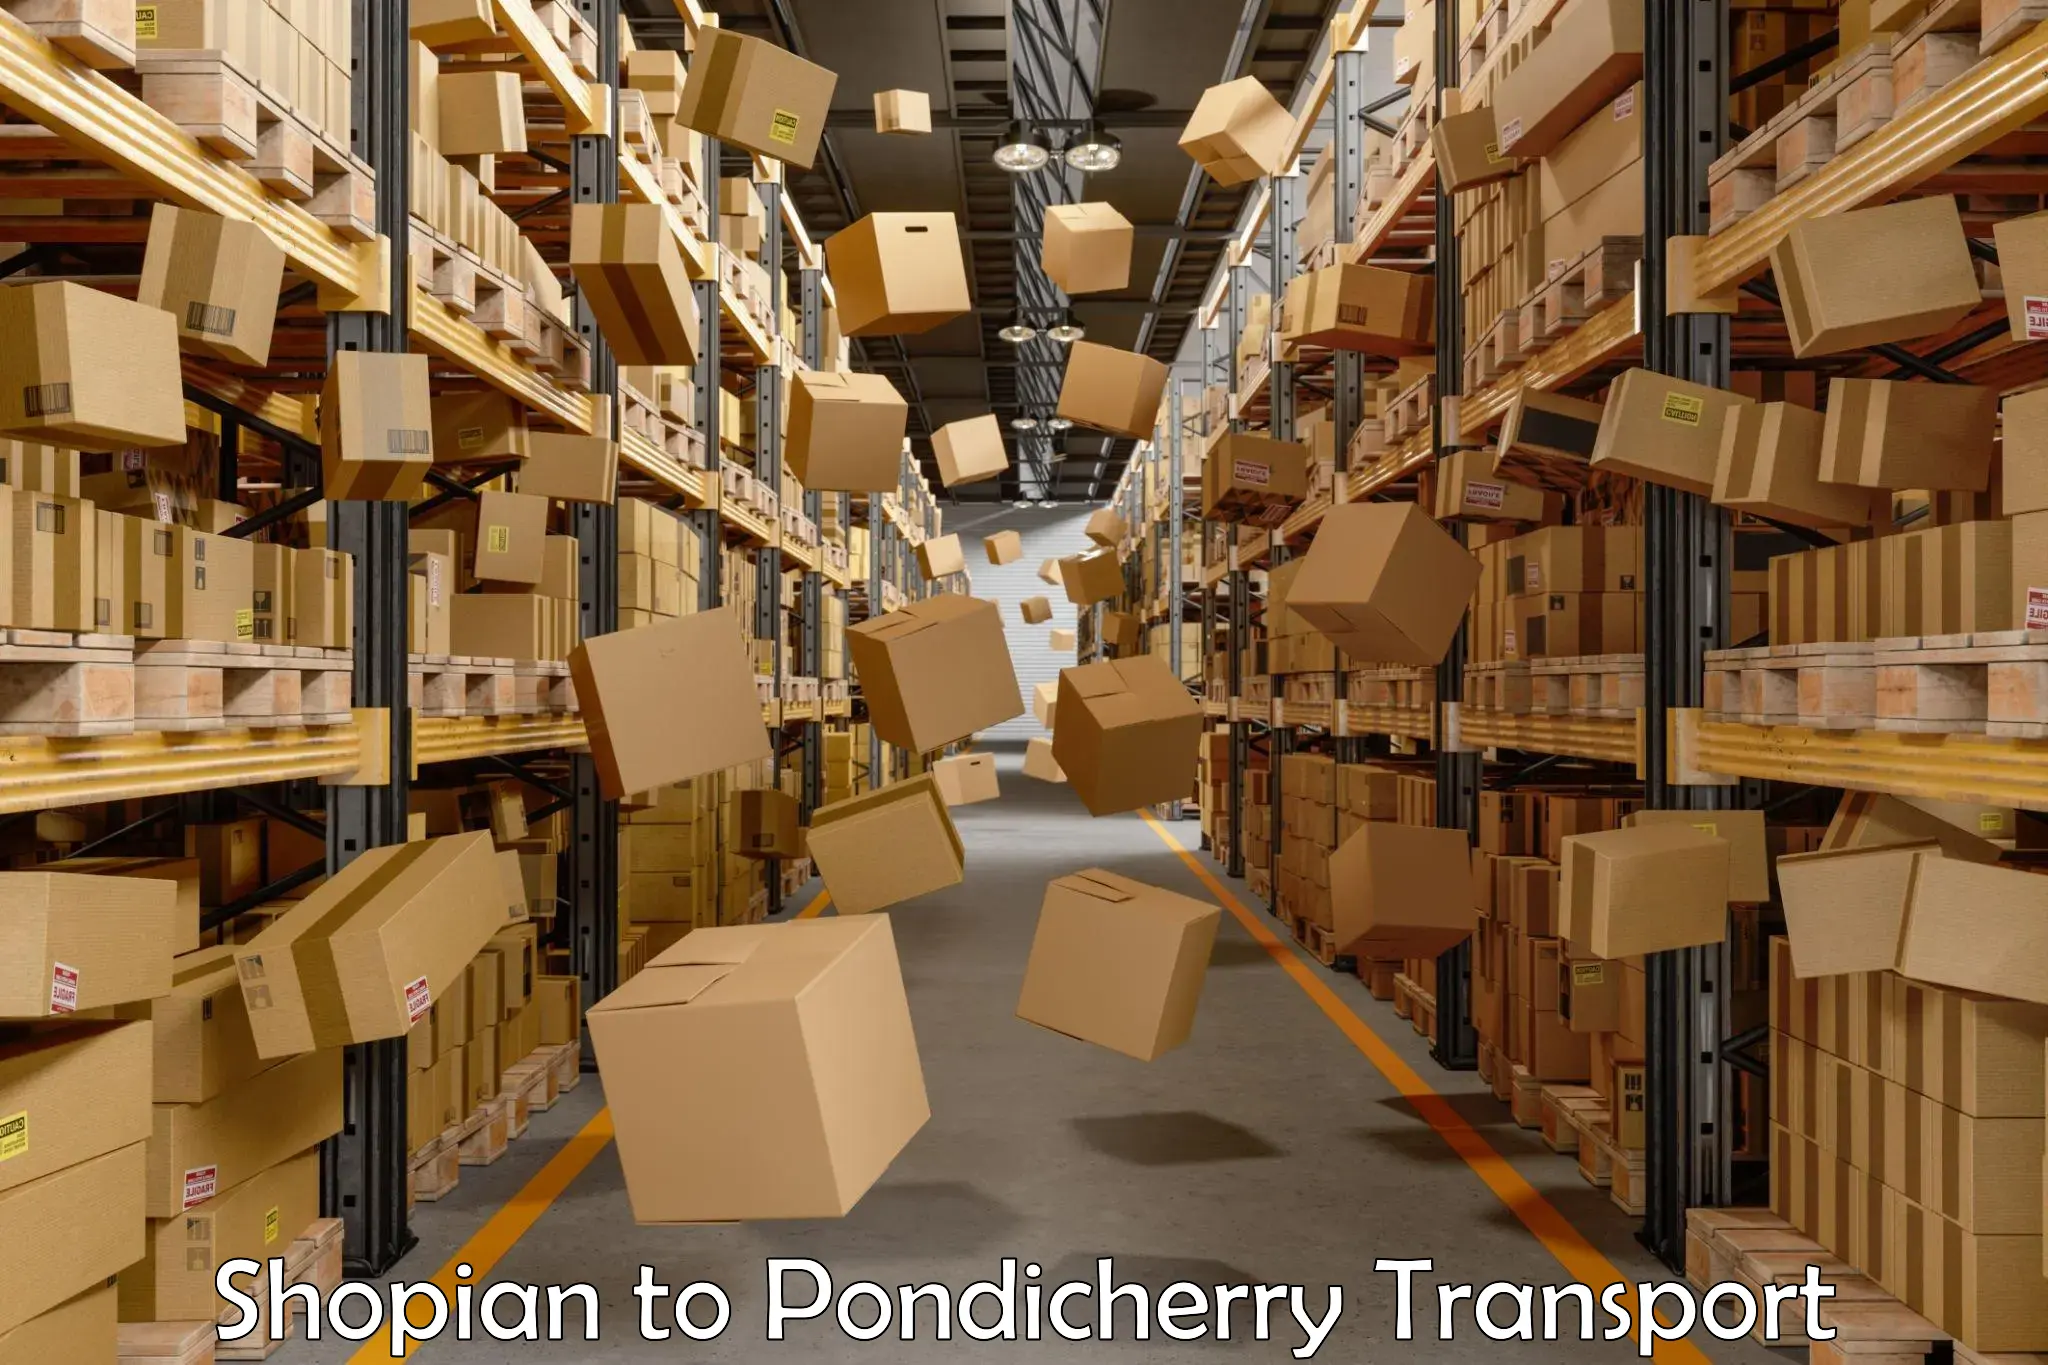 Pick up transport service Shopian to Pondicherry University